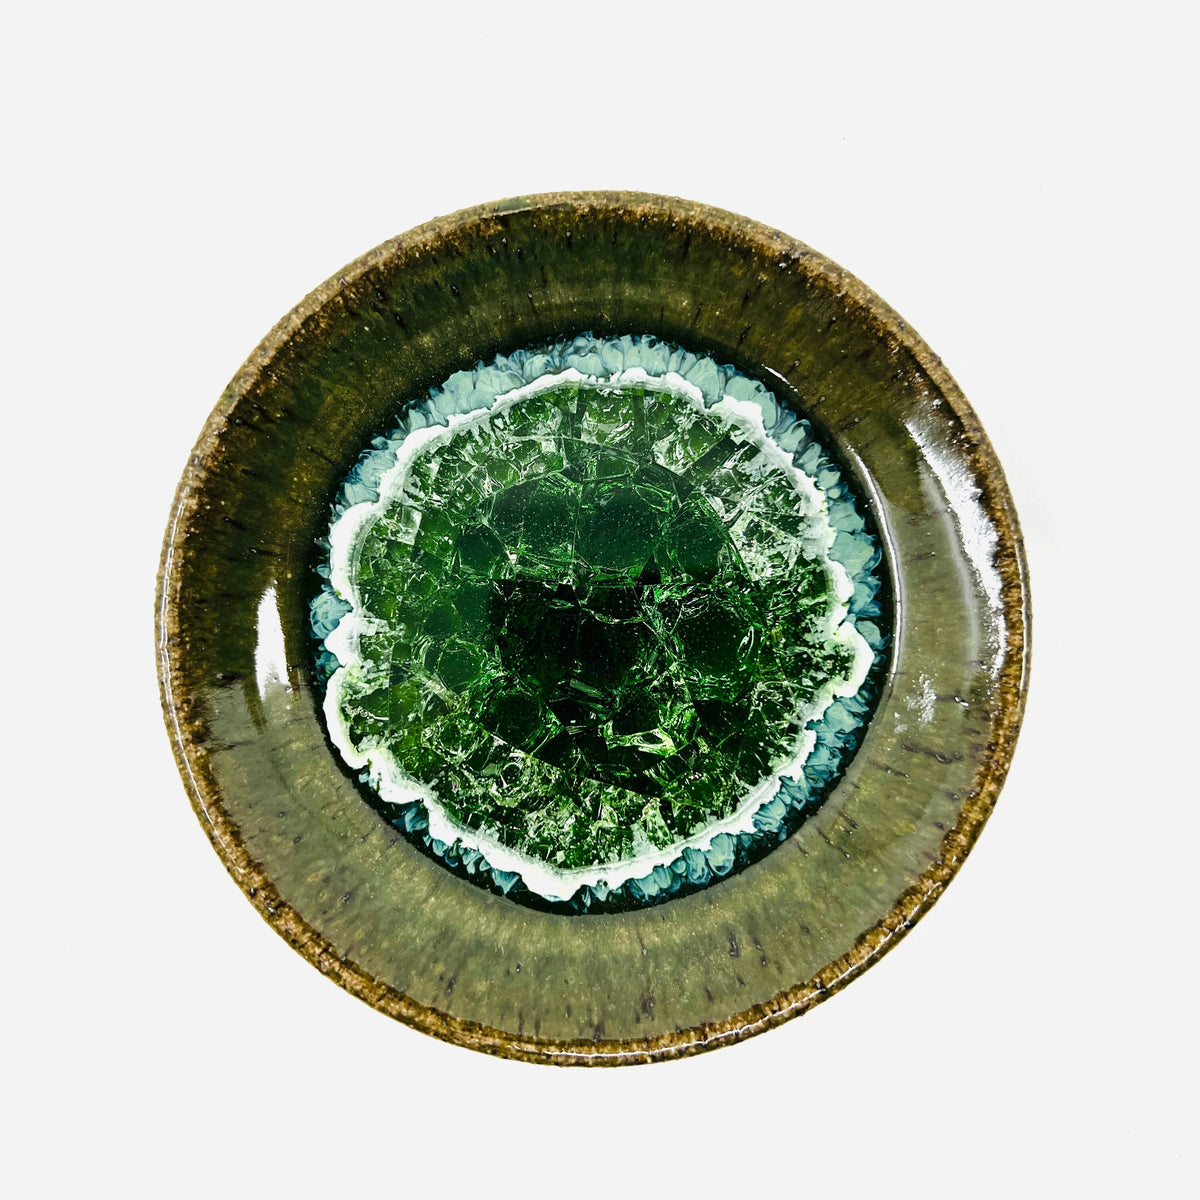 Small Ceramic and Glass Dish, Emerald Decor Dock 6 